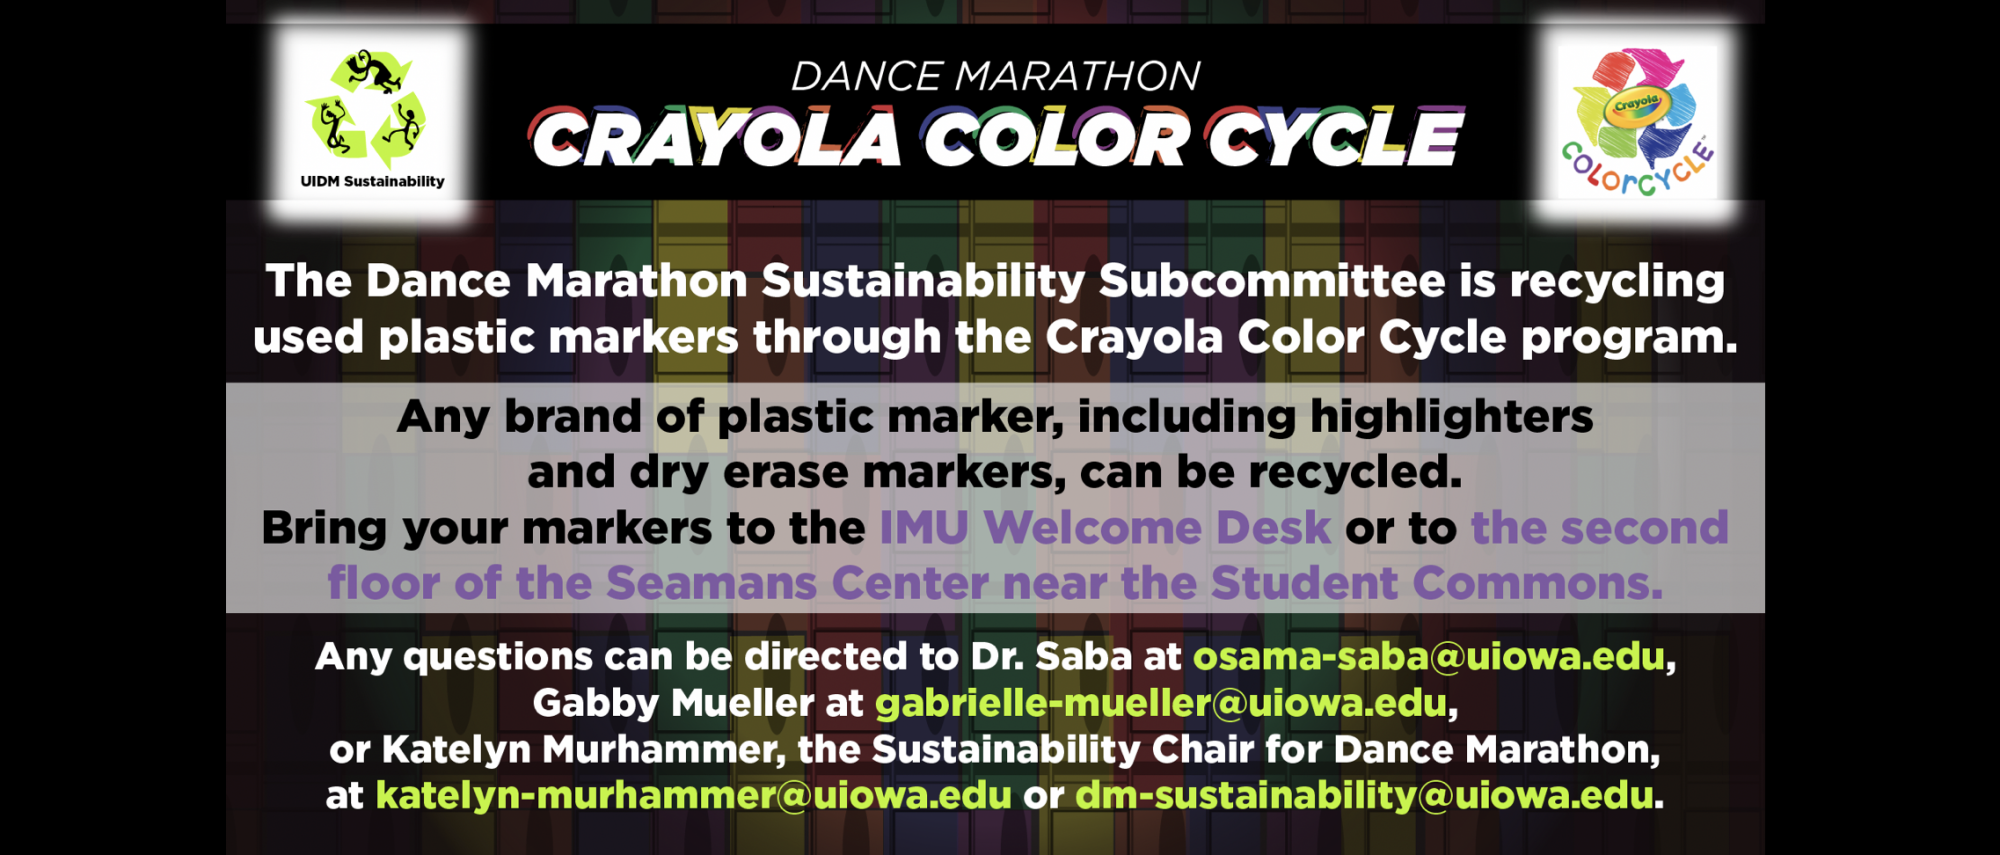 Crayola Color Cycle Program